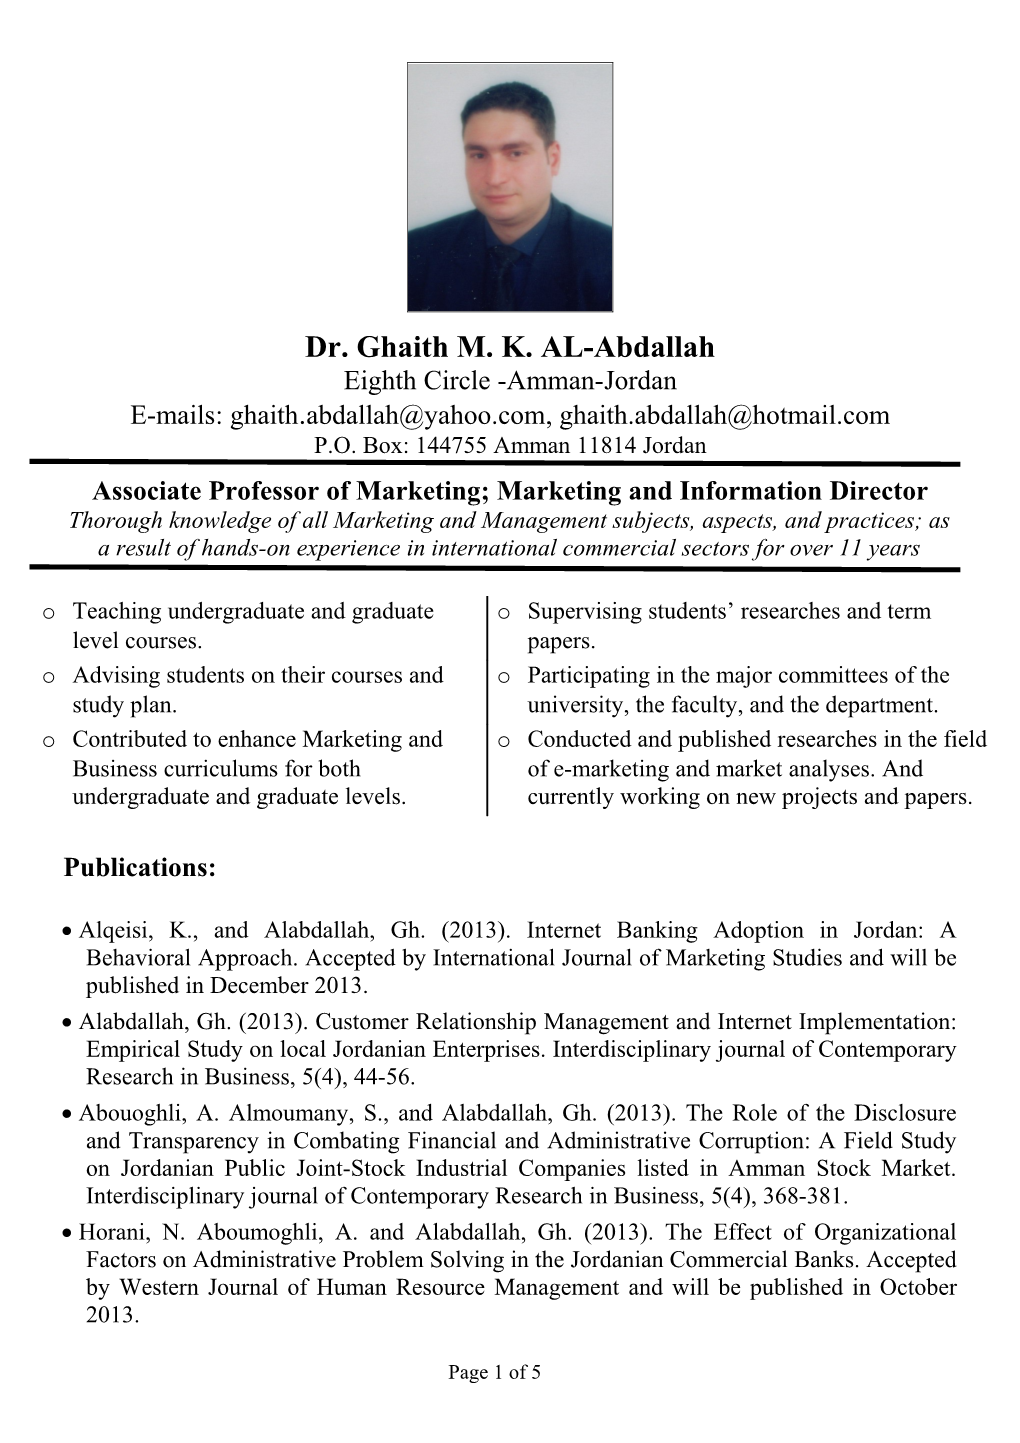 Dr. Ghaith M. K. AL-Abdallah